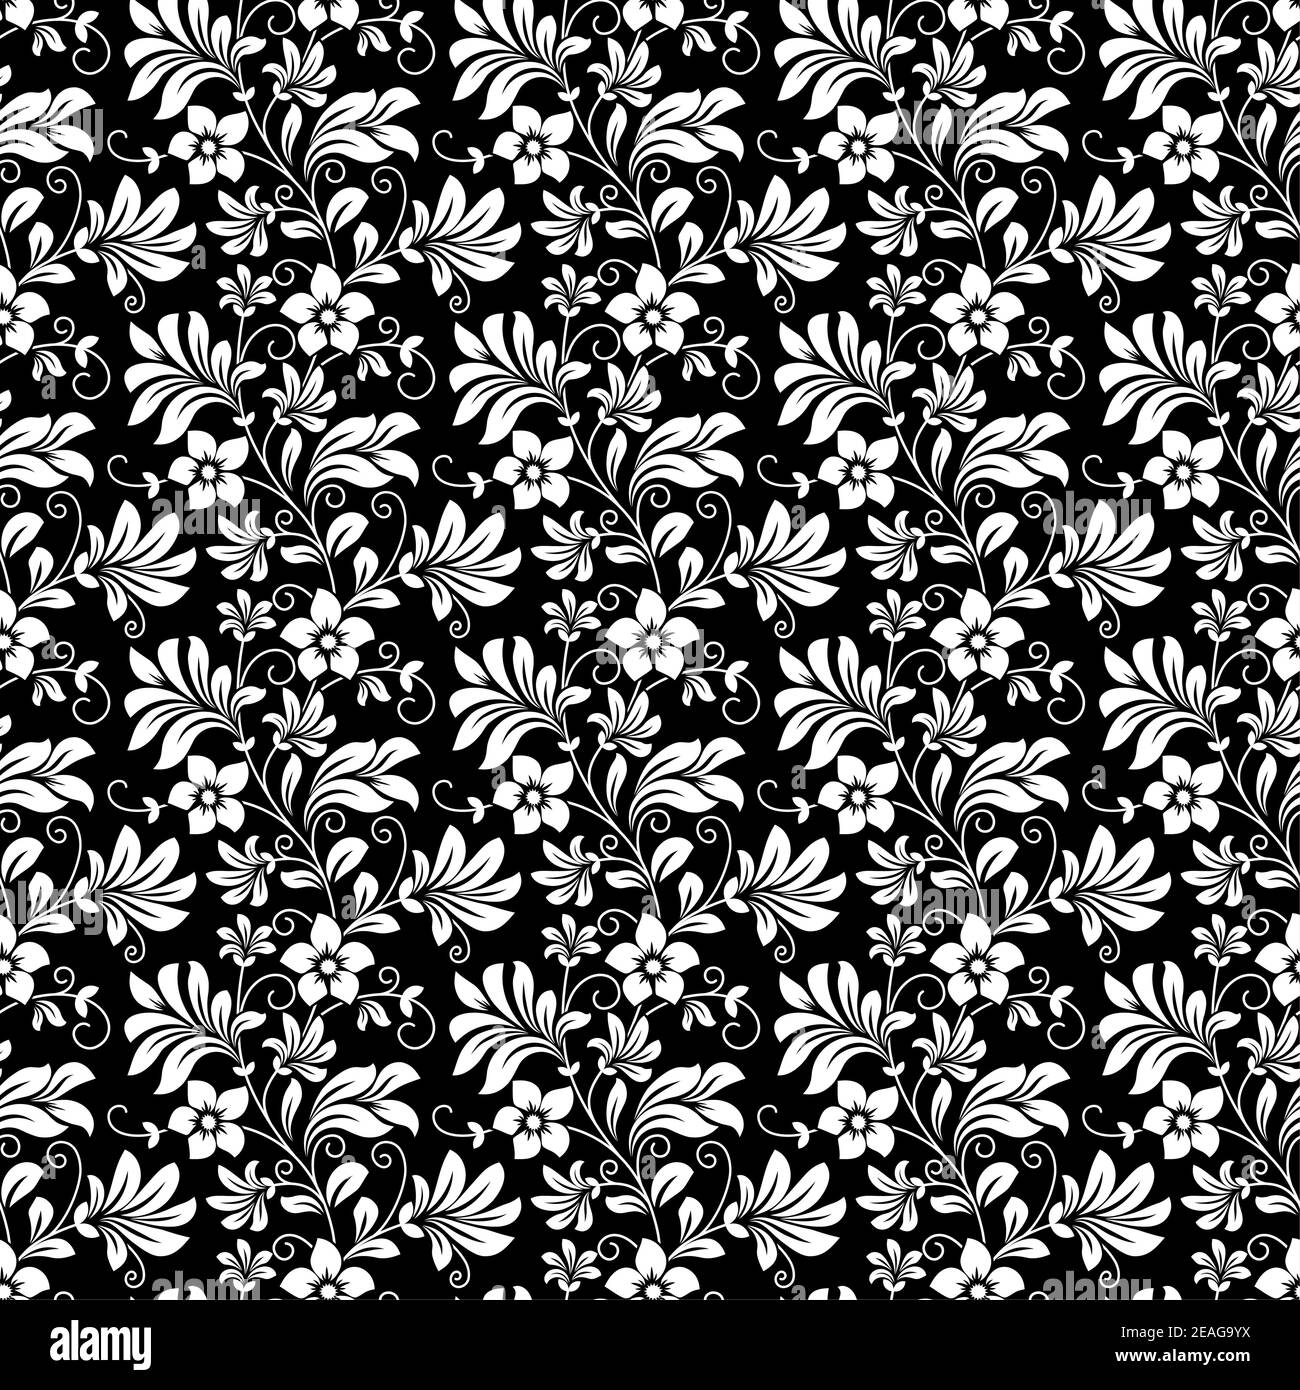 Bella intricata retro senza cuciture motivo floreale di fiori densi imballati in nero e bianco adatto per carta da parati, piastrelle e tessuto in squa Illustrazione Vettoriale